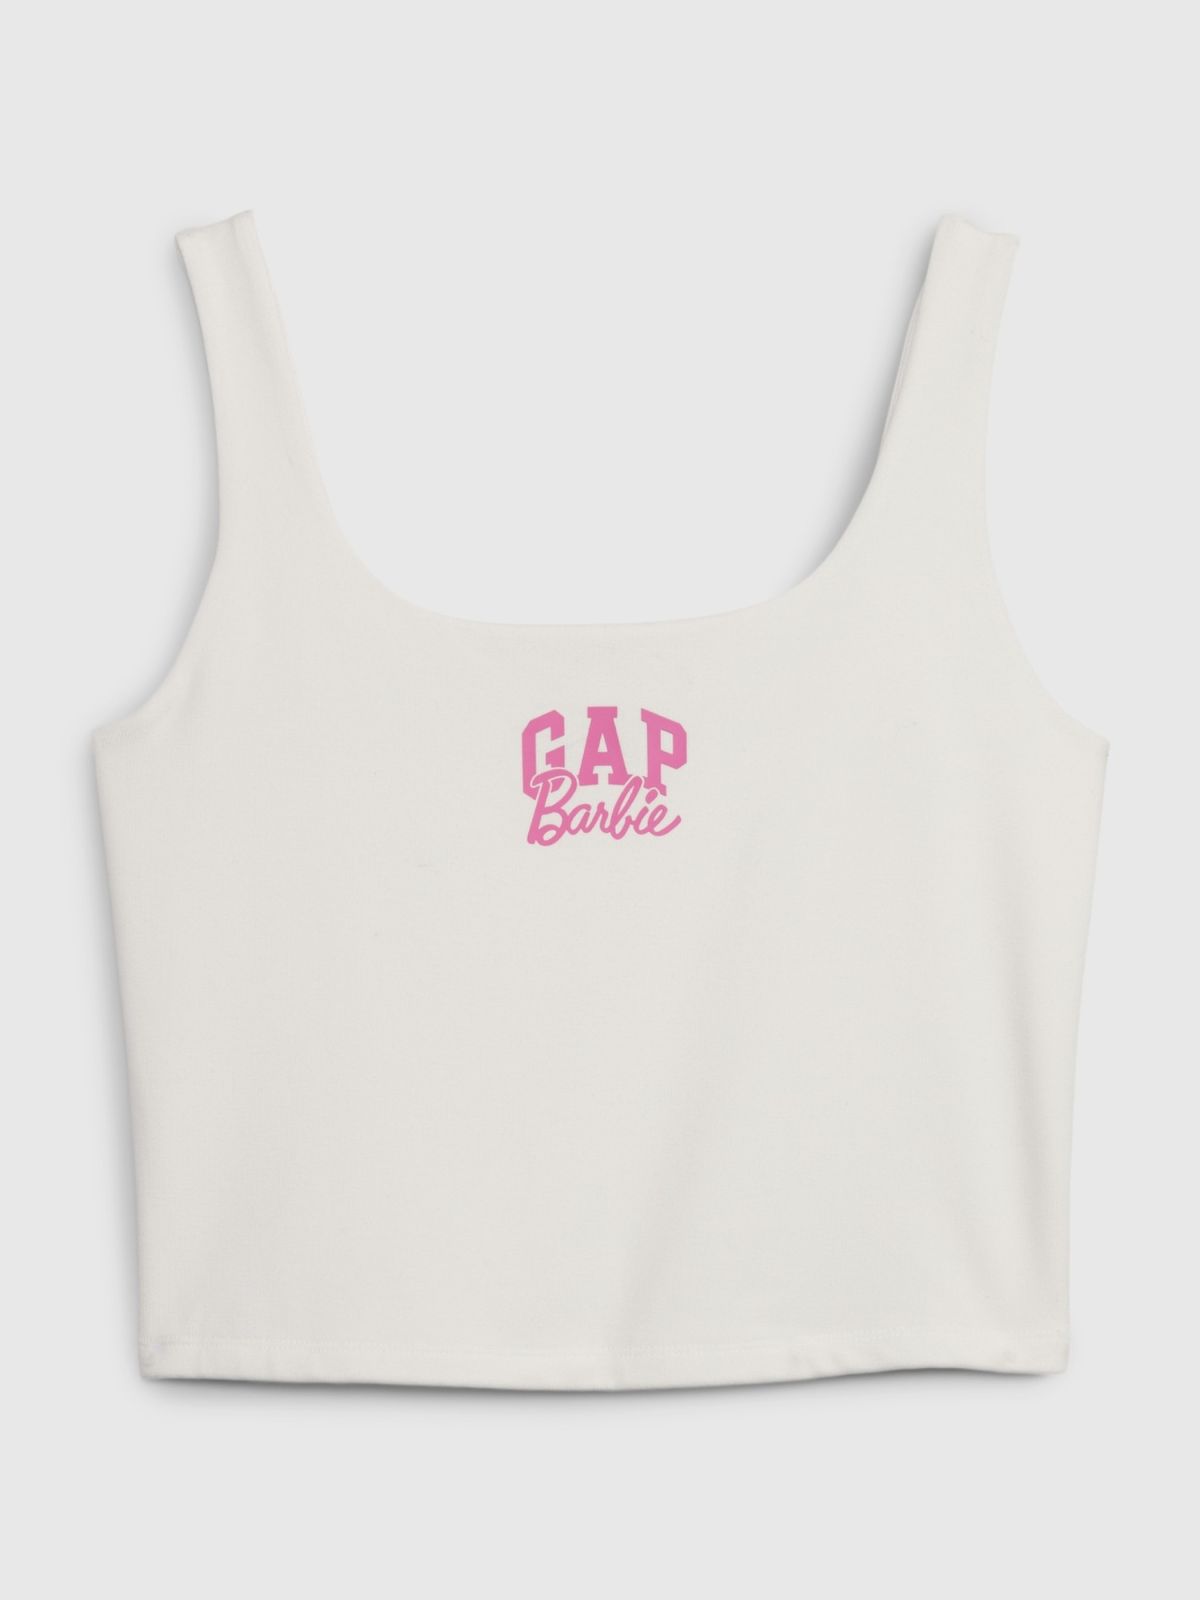  גופייה עם לוגו Gap × Barbie של GAP